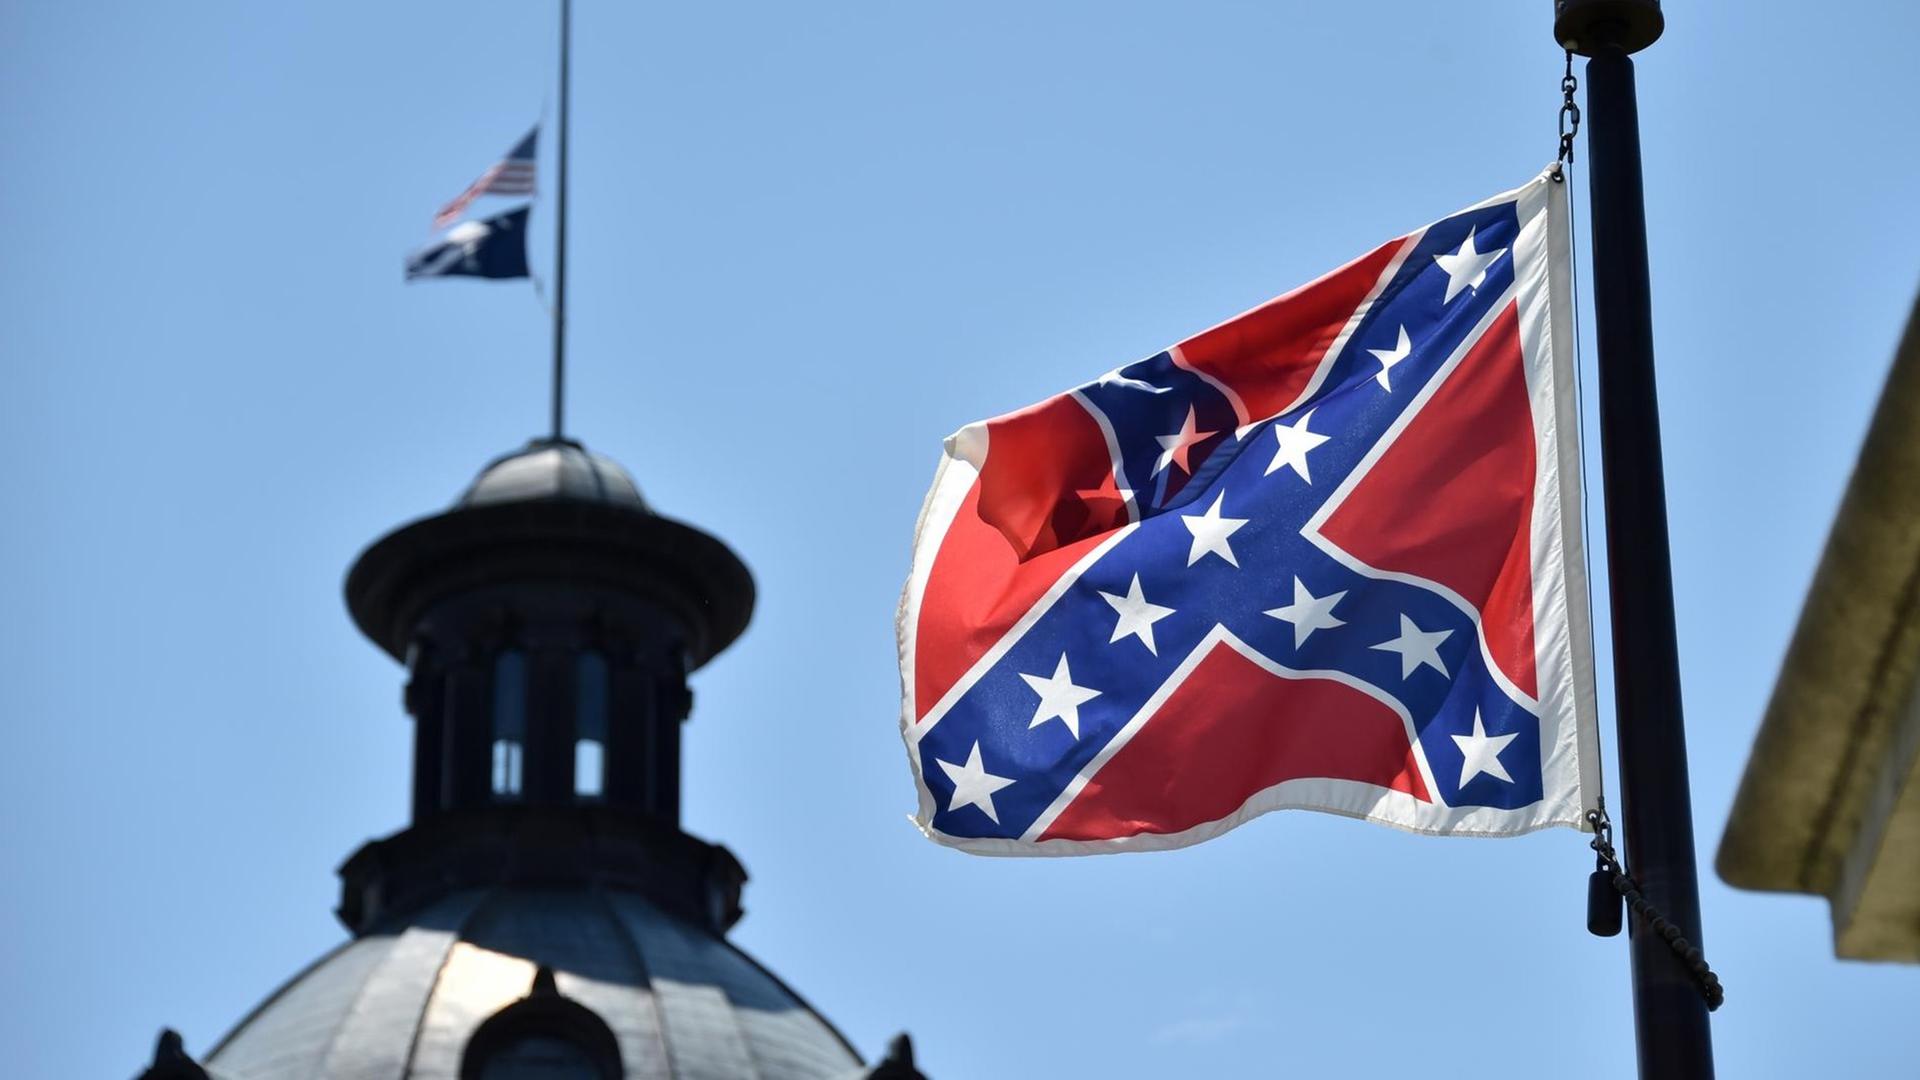 Die Südstaaten-Flagge weht vor blauem Himmel; im Hintergrund sieht man die Kuppel eines Gebäudes.